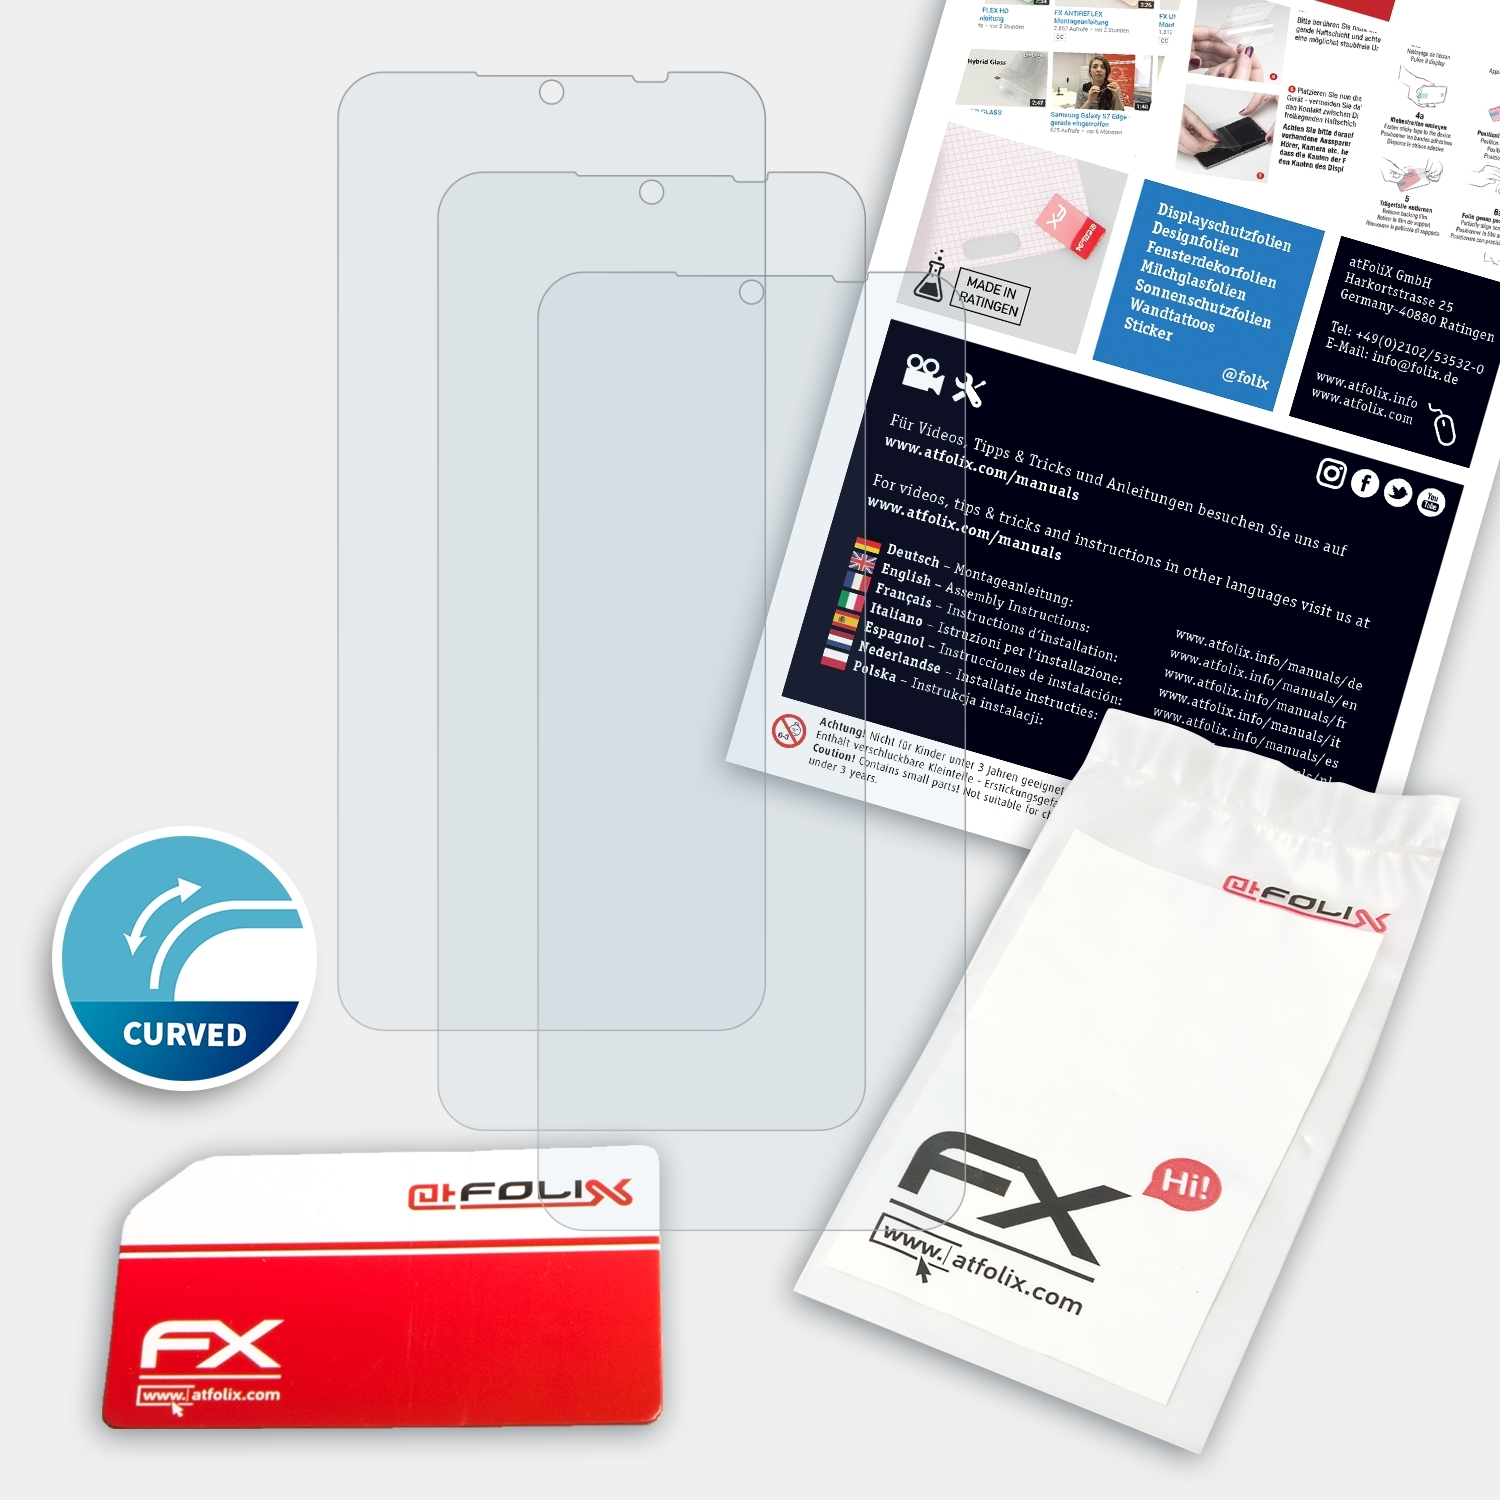 ATFOLIX 3x FX-ActiFleX Displayschutz(für Yezz Art 2 Pro)